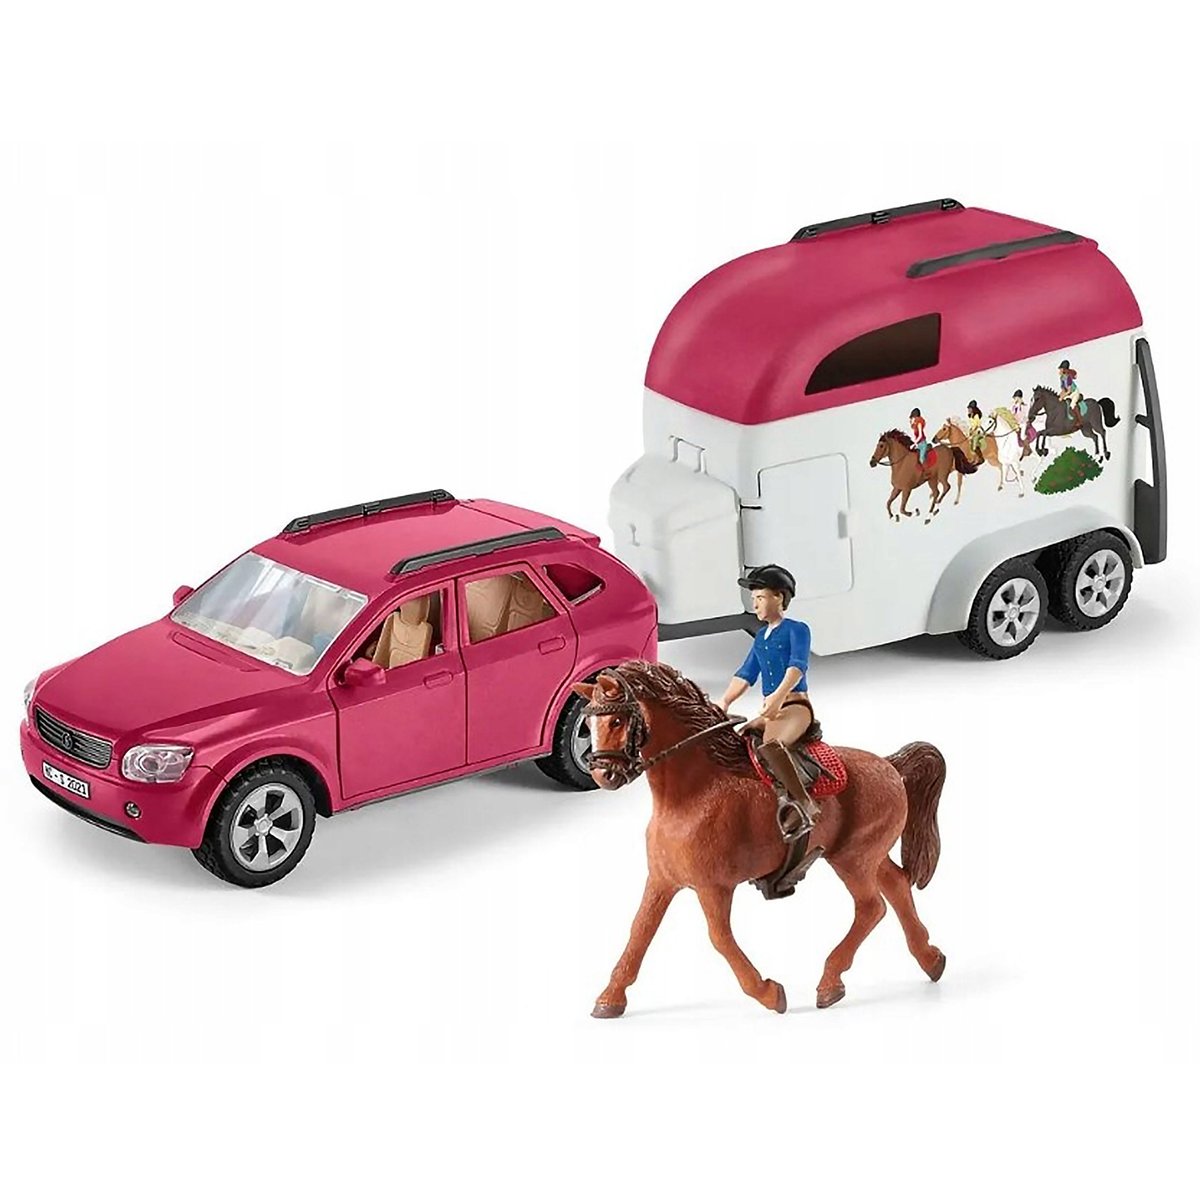 Zdjęcia - Klocki TM Toys Schleich Horse Club - Samochód z przyczepą dla konia, figurki dla dzieci 5 